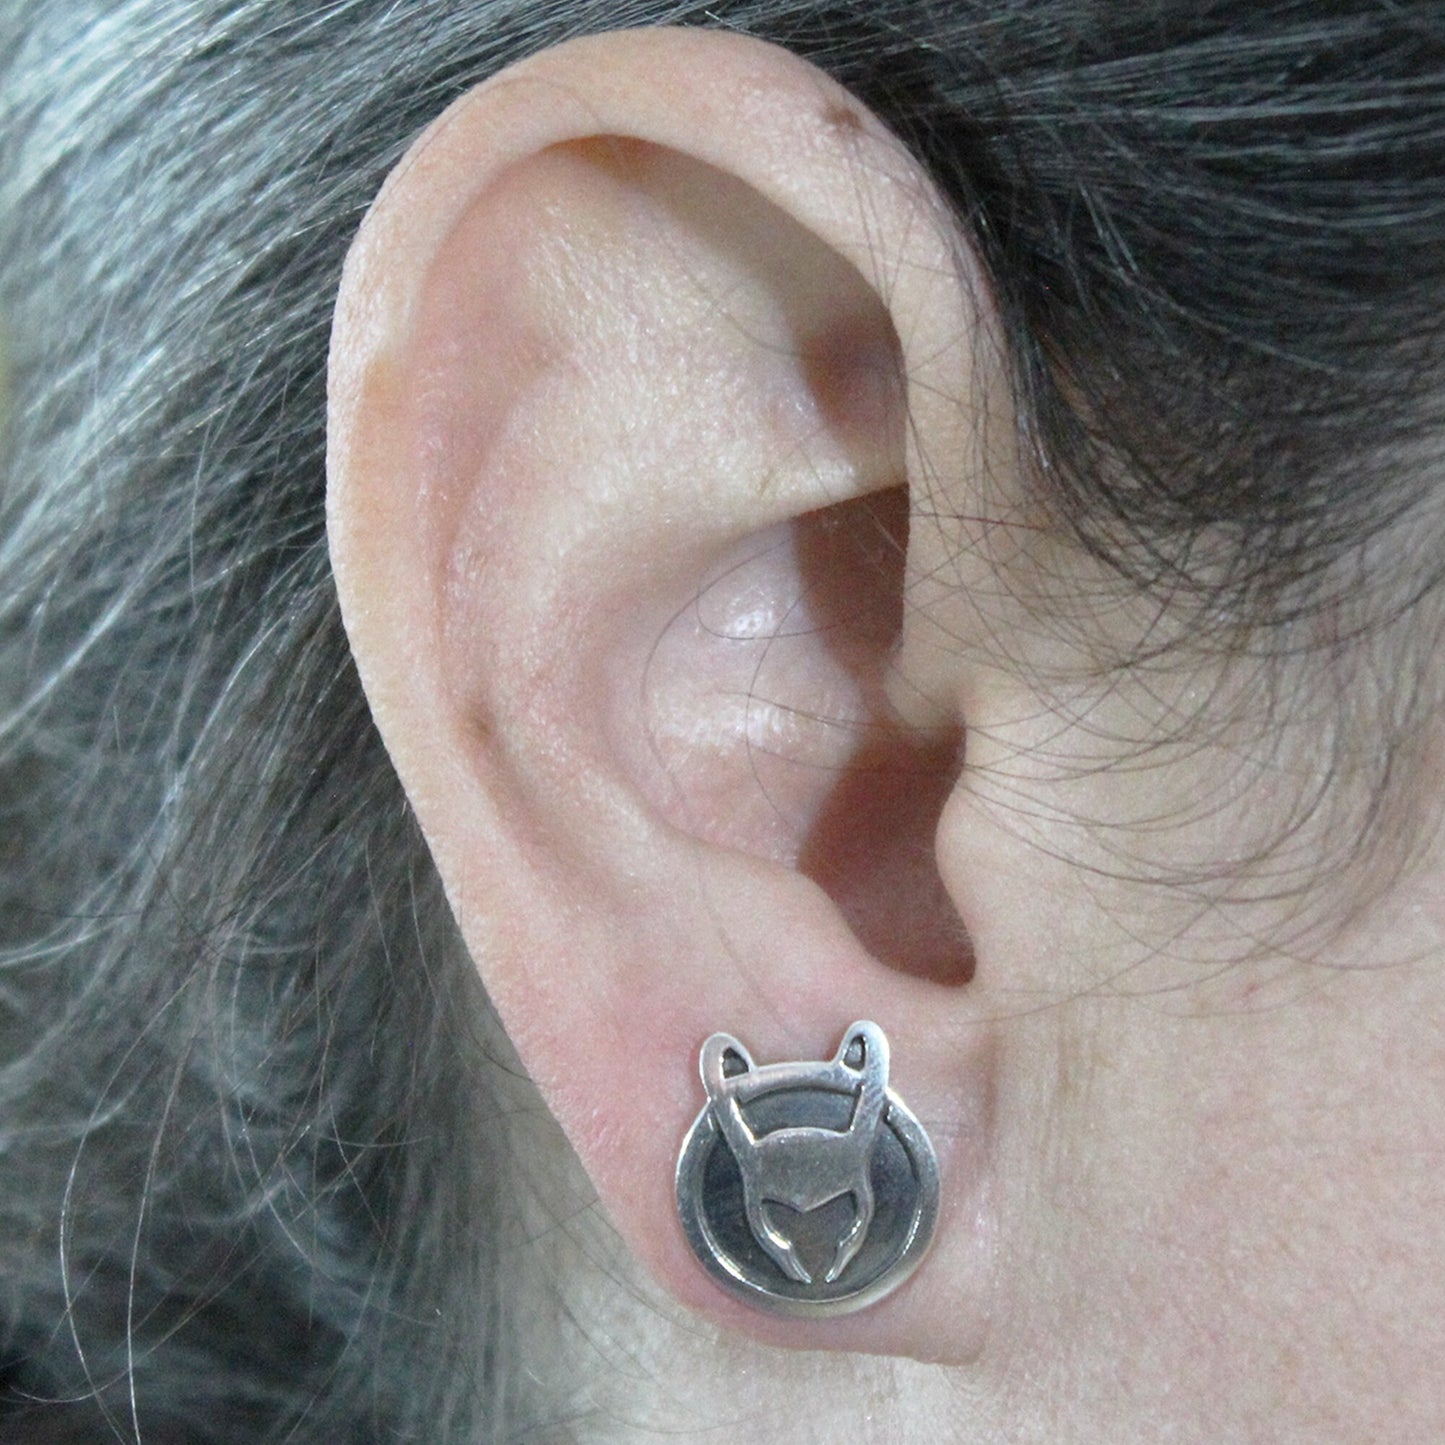 LOKI earrings in 925 silver